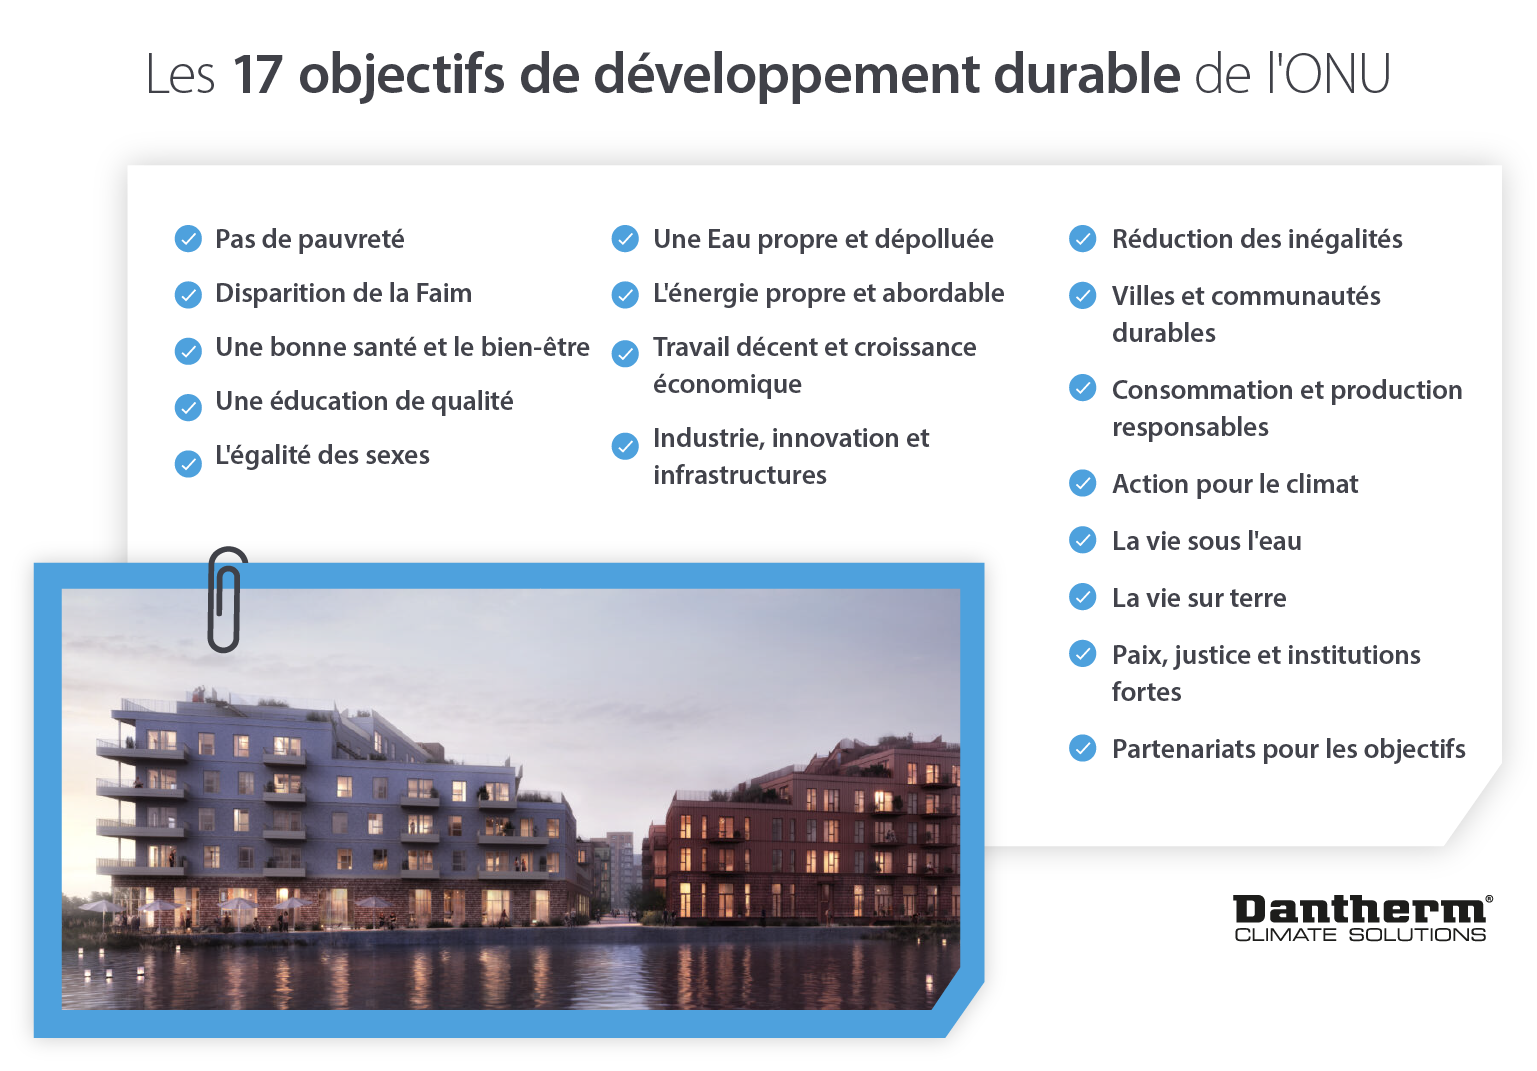 Les objectifs de développement durable du village UN17 comme liste de caractéristiques - Image infographique